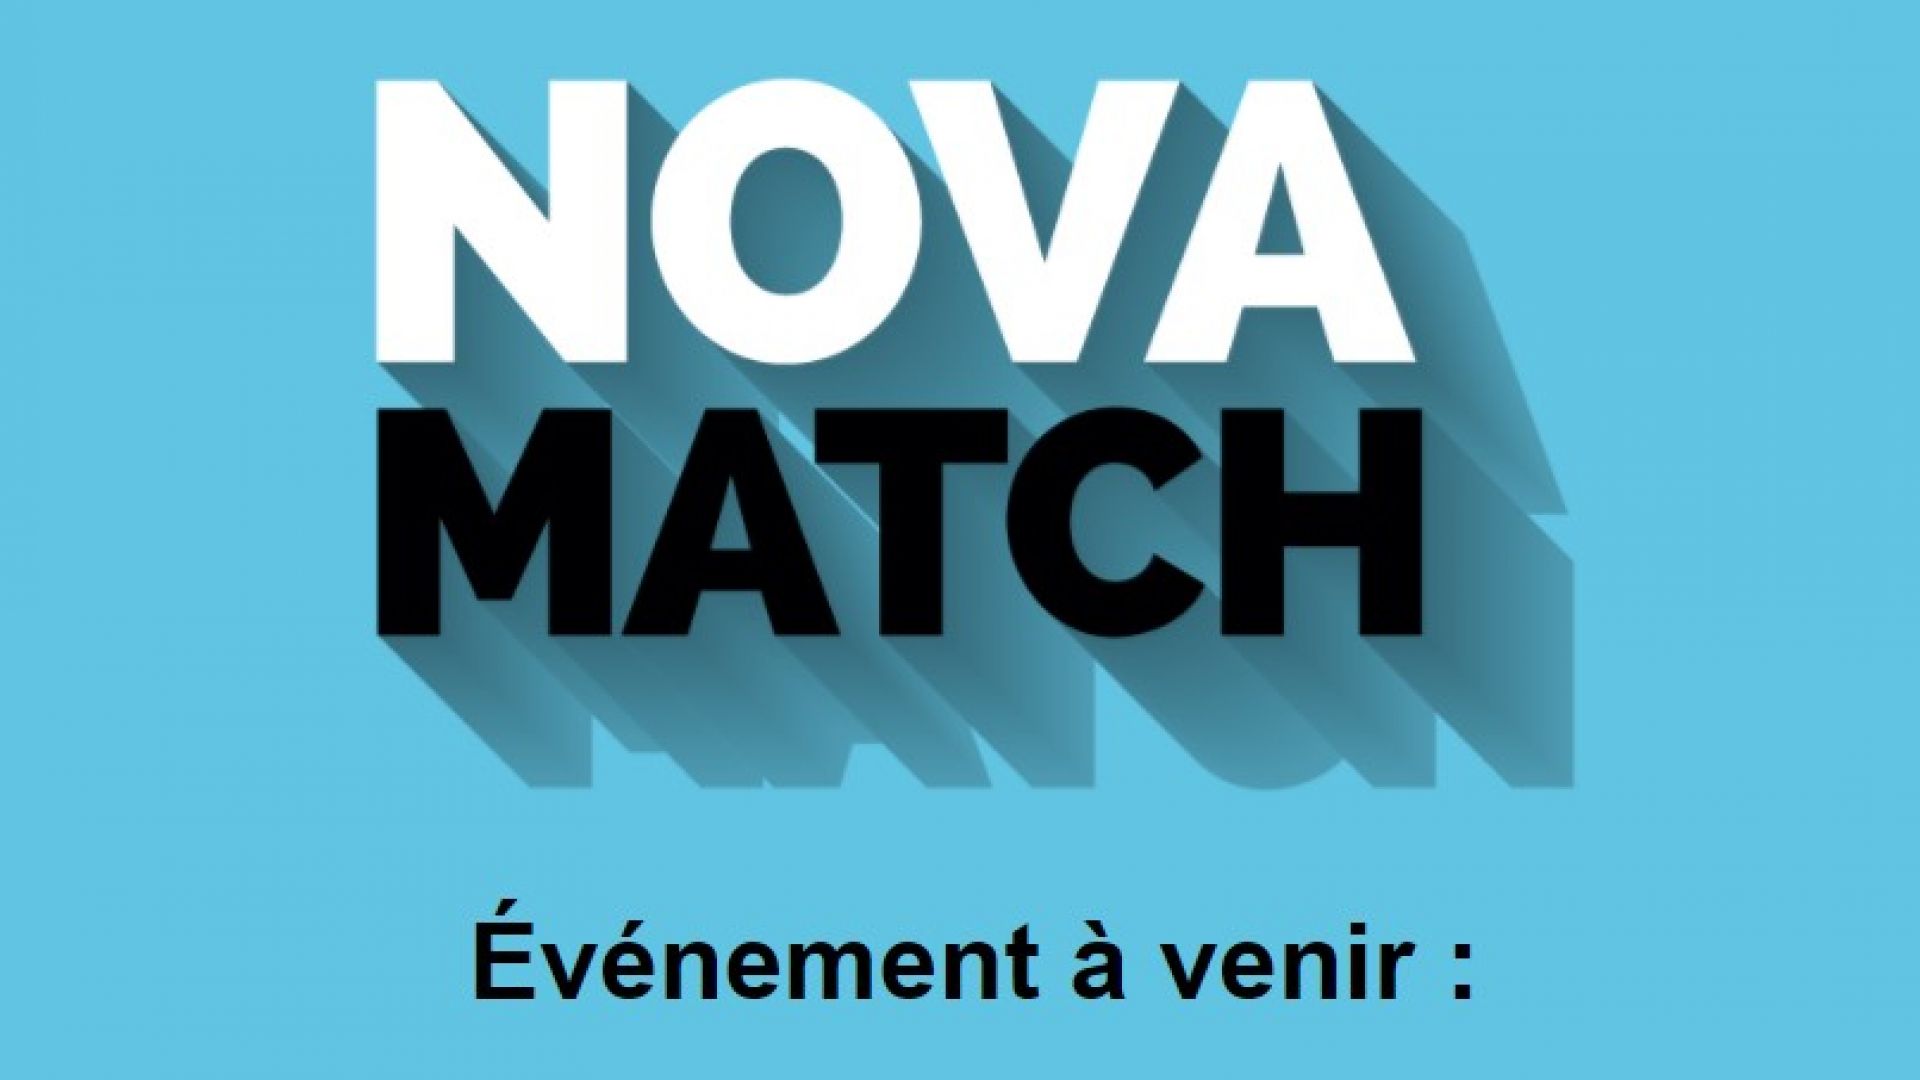 Qui veut Novamatcher ? 48 h chrono pour tester notre nouvelle application participative!